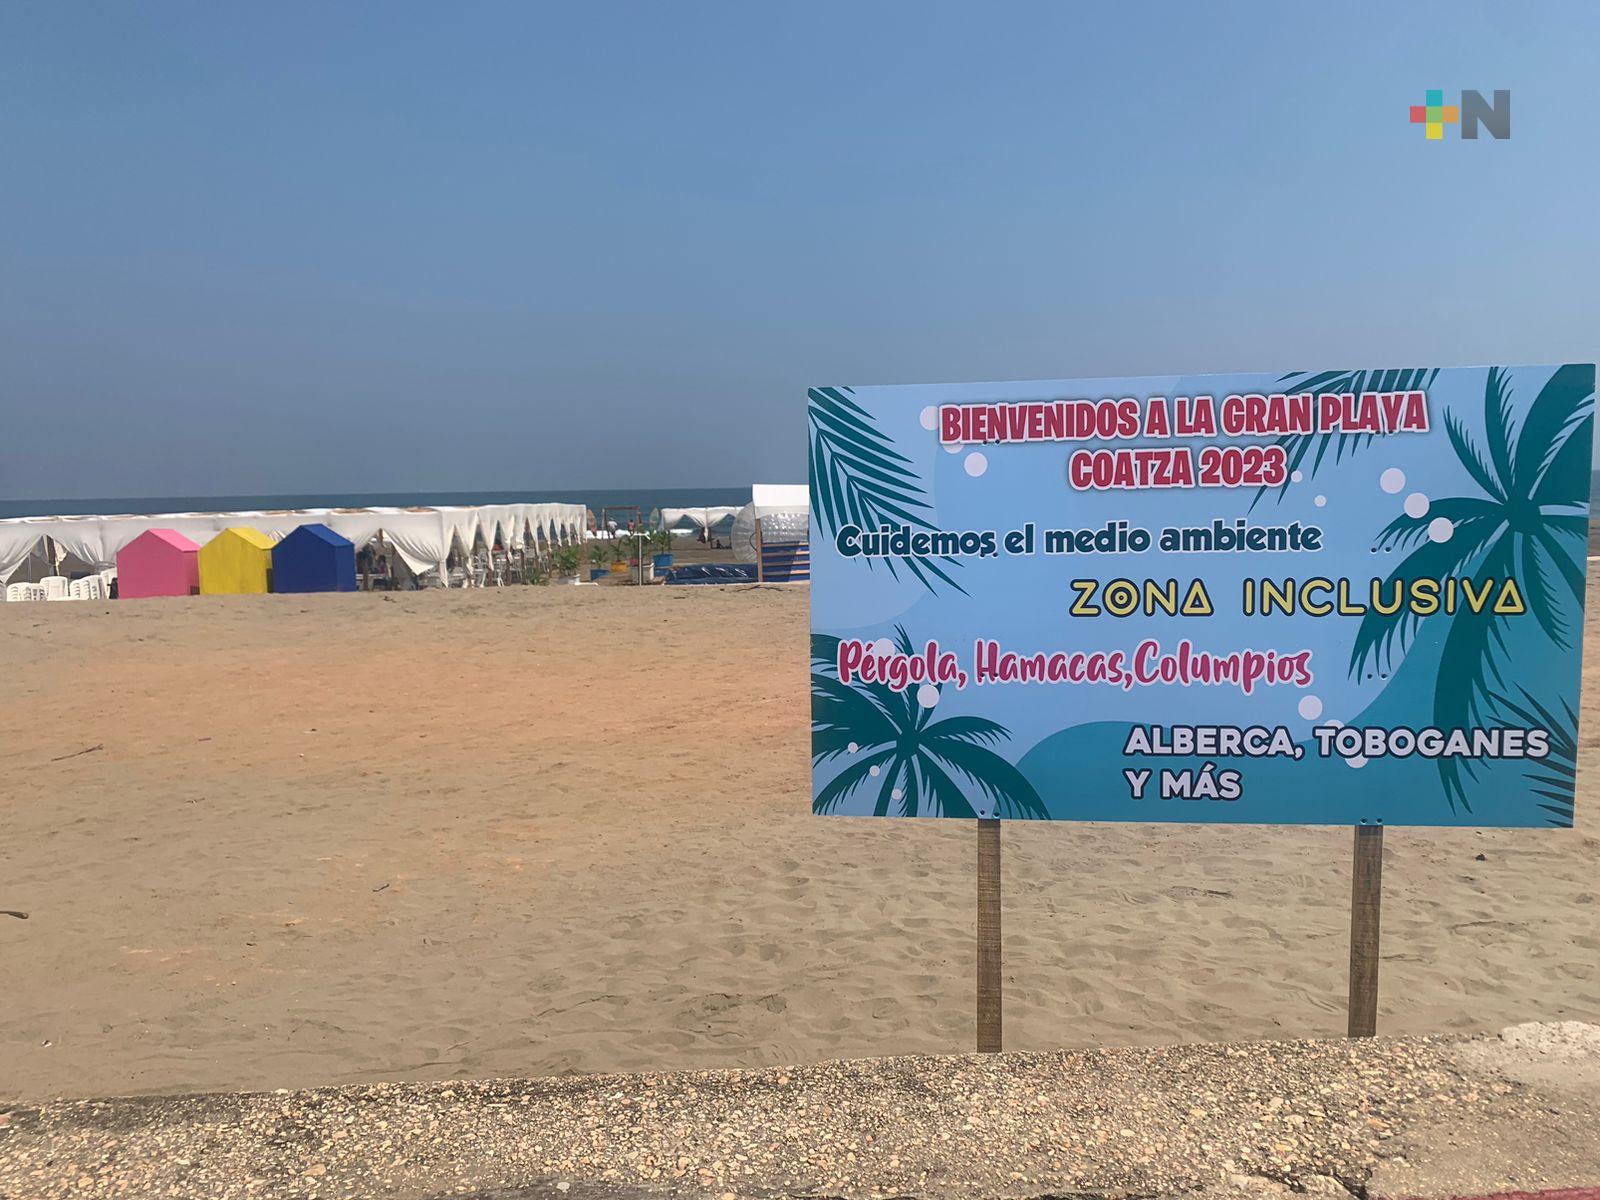 Playas de Coatza libres alcohol y con servicios para disfrute de bañistas